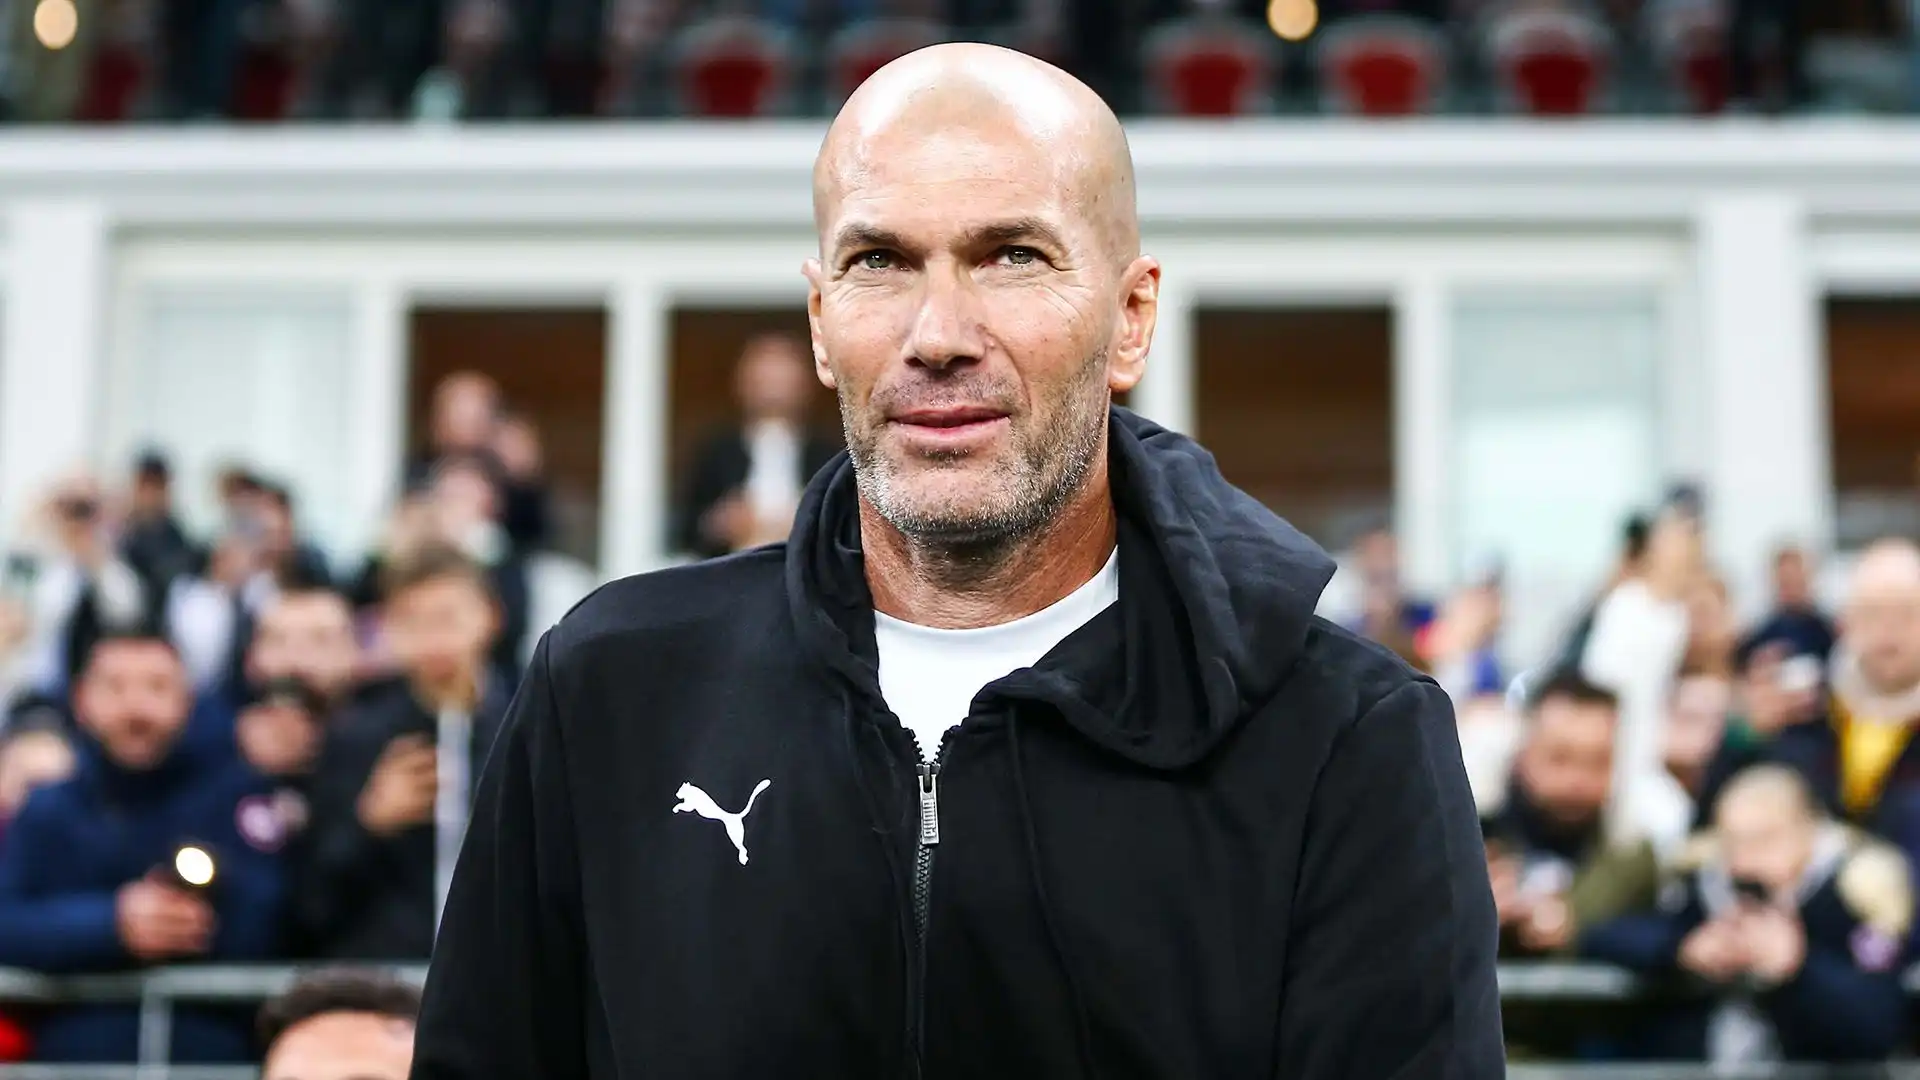 Il presidente del Bayern Monaco Hainer recentemente ha aperto a un possibile arrivo di Zidane